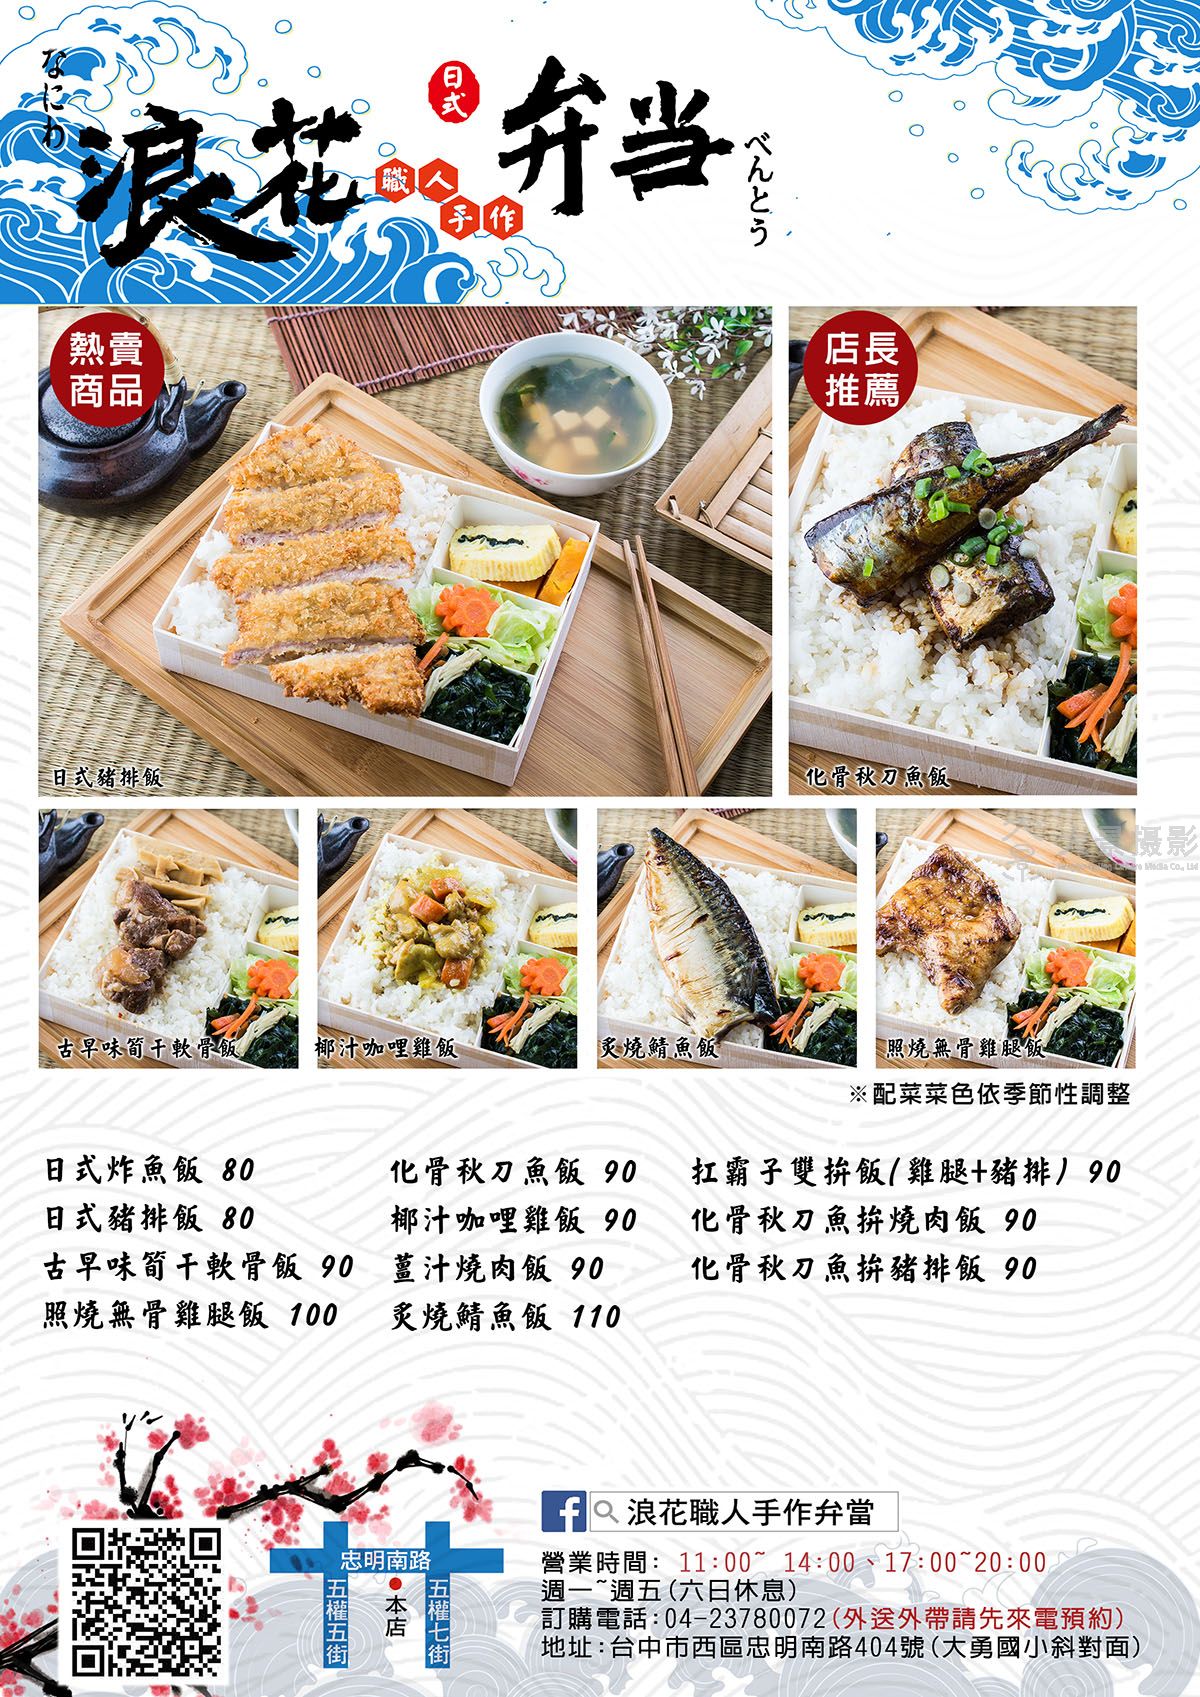 上海菜单设计